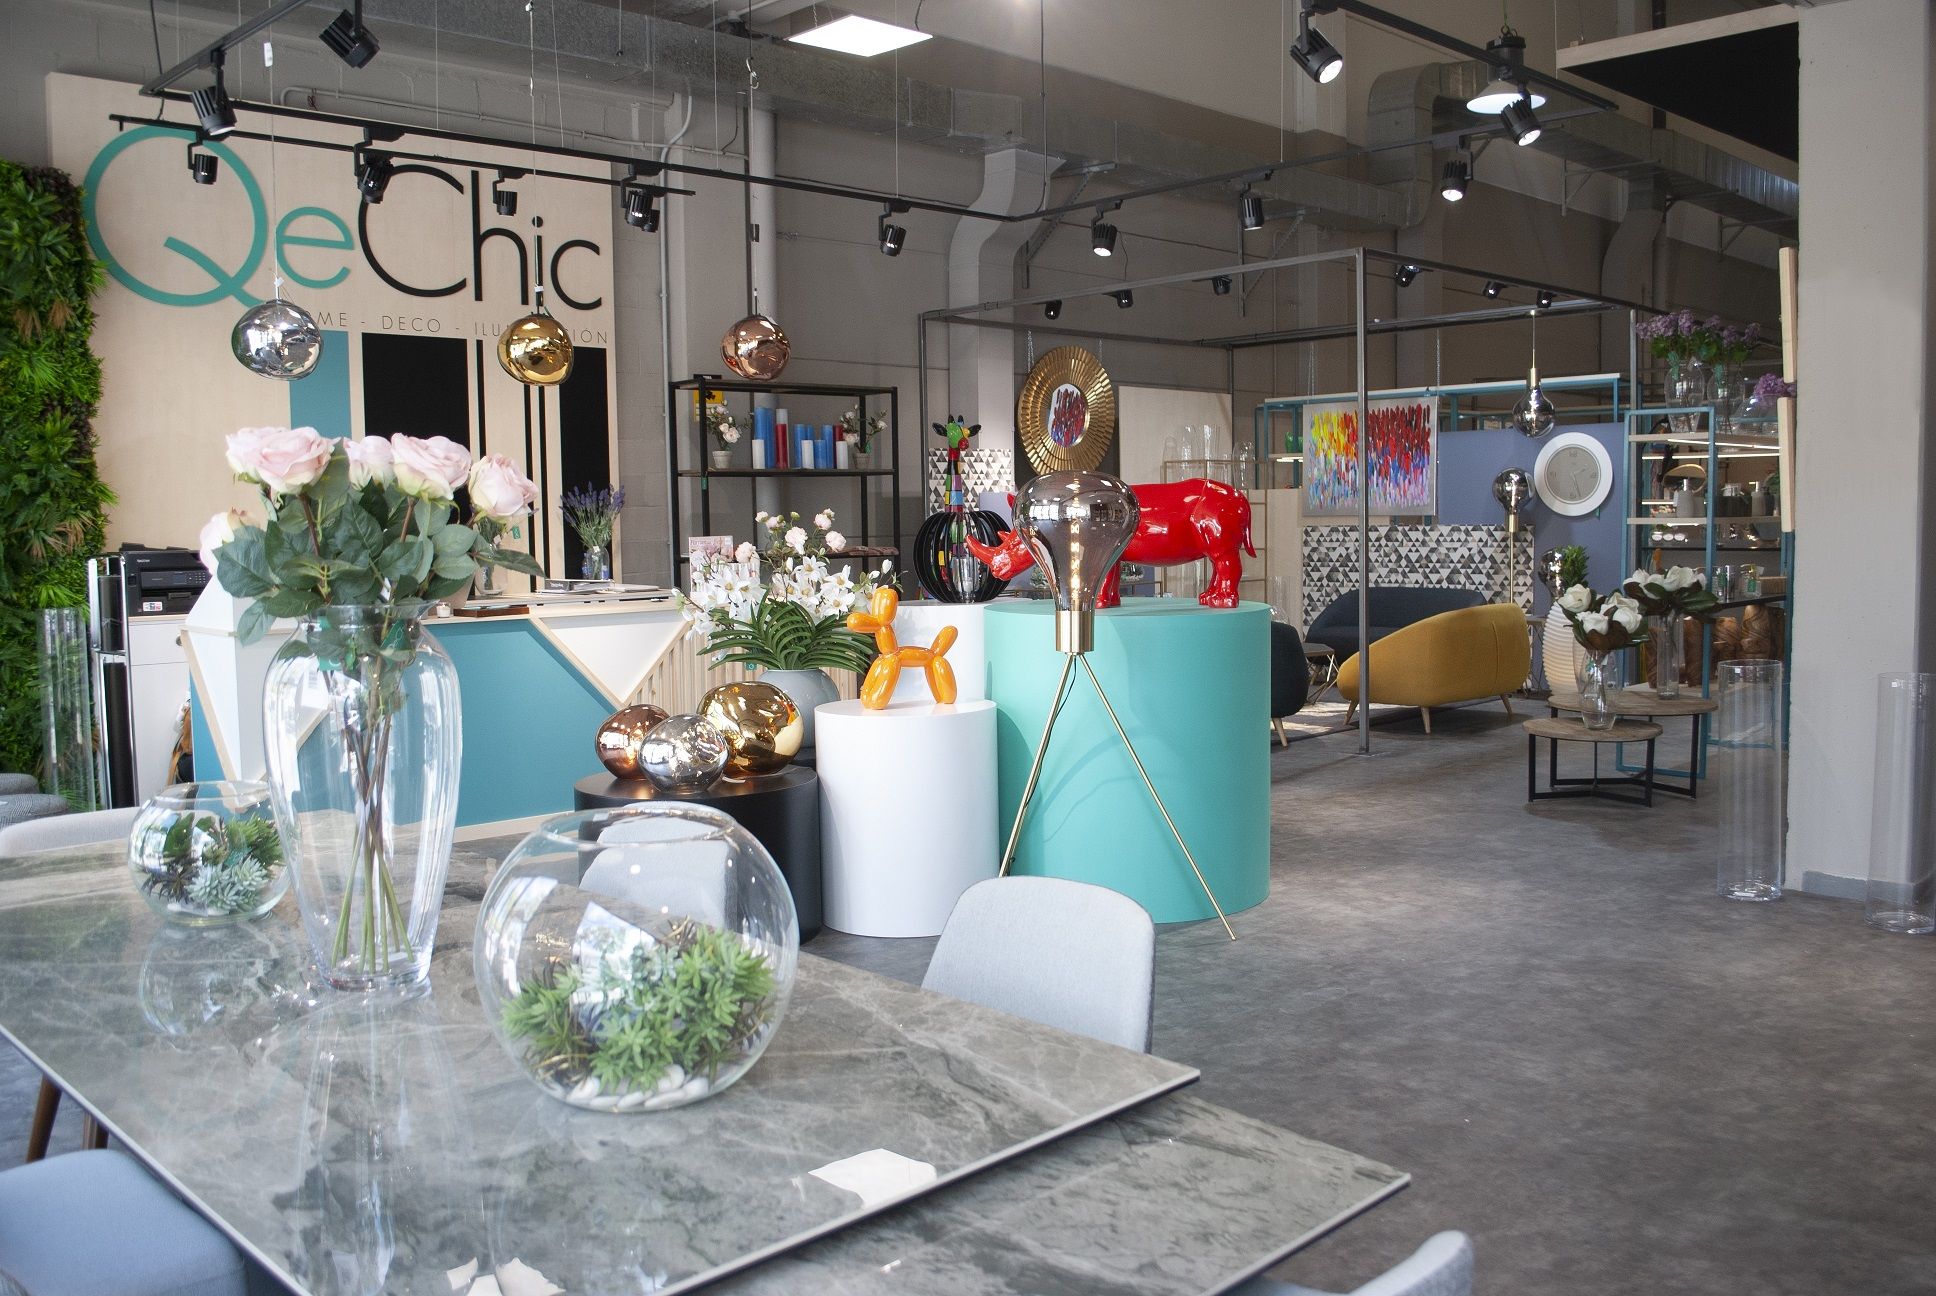 frase Andes Peligro QeChic abre su primera tienda de muebles, iluminación y decoración en  Madrid - Bolsamania.com